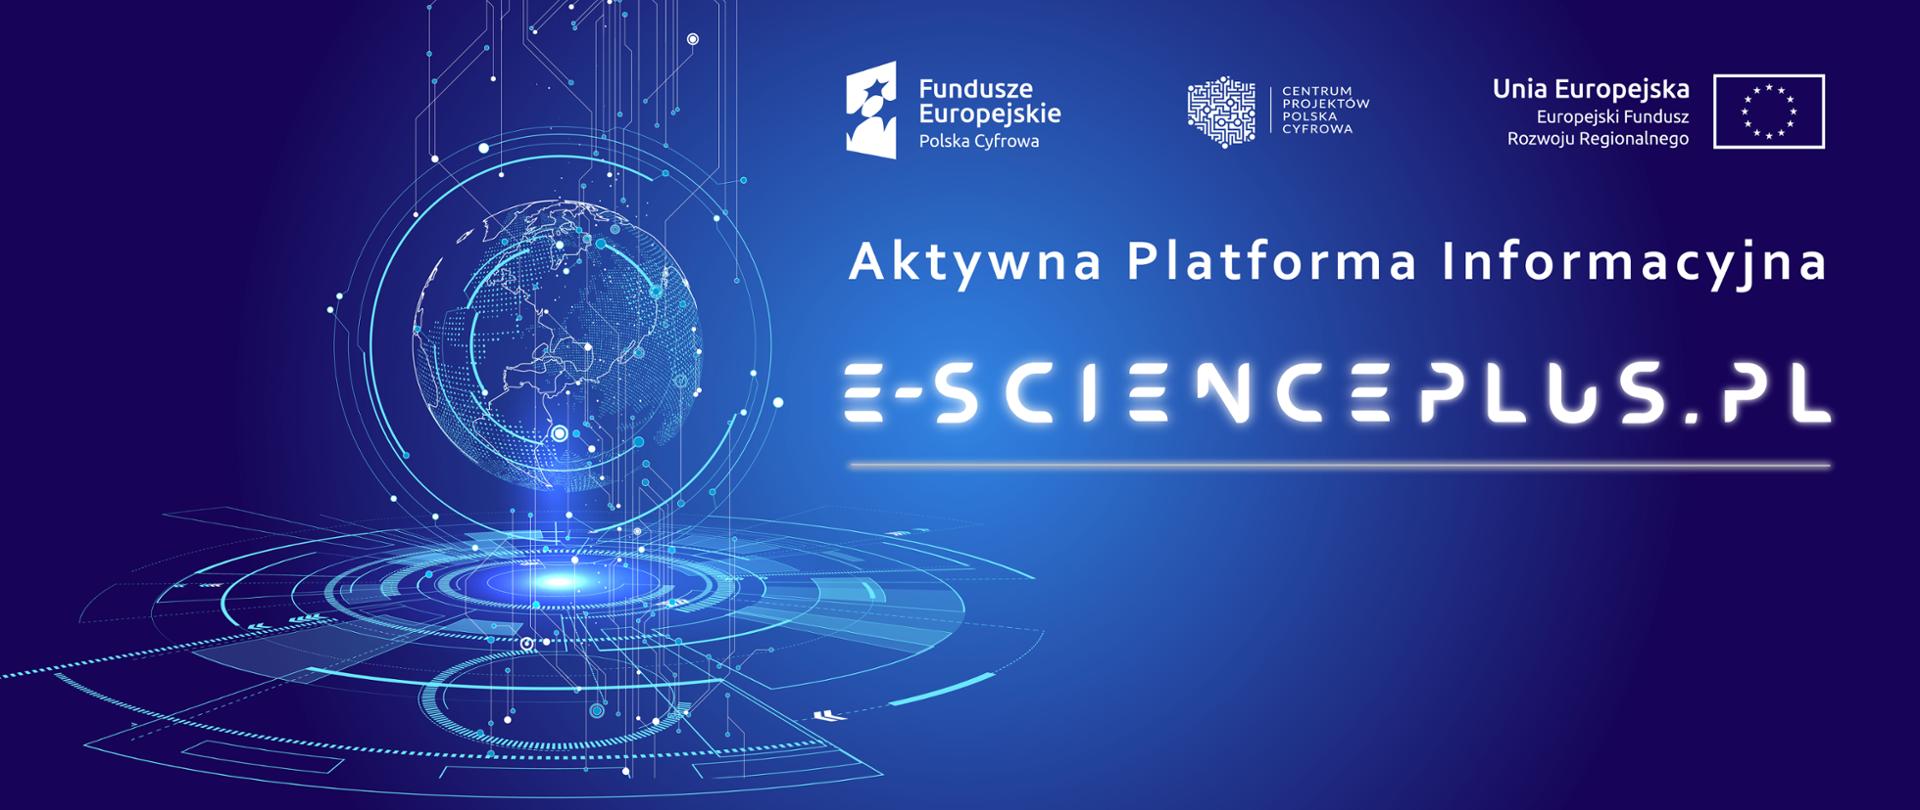 Aktywna Platforma Informacyjna e-scienceplus.pl